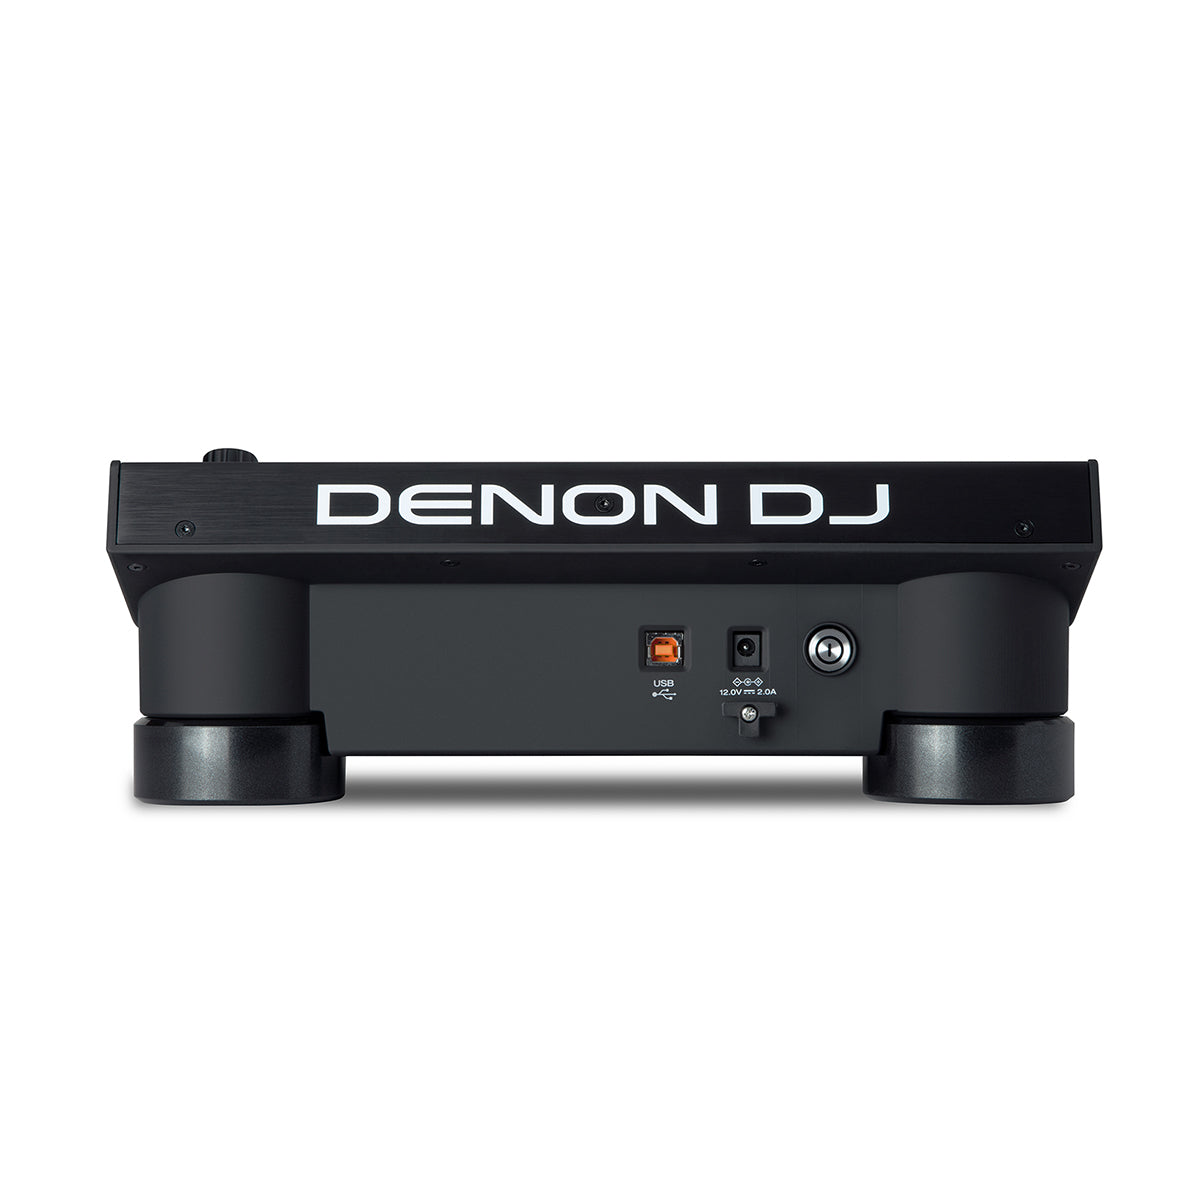 Denon DJ LC6000 PRIME Add On DJ Controller